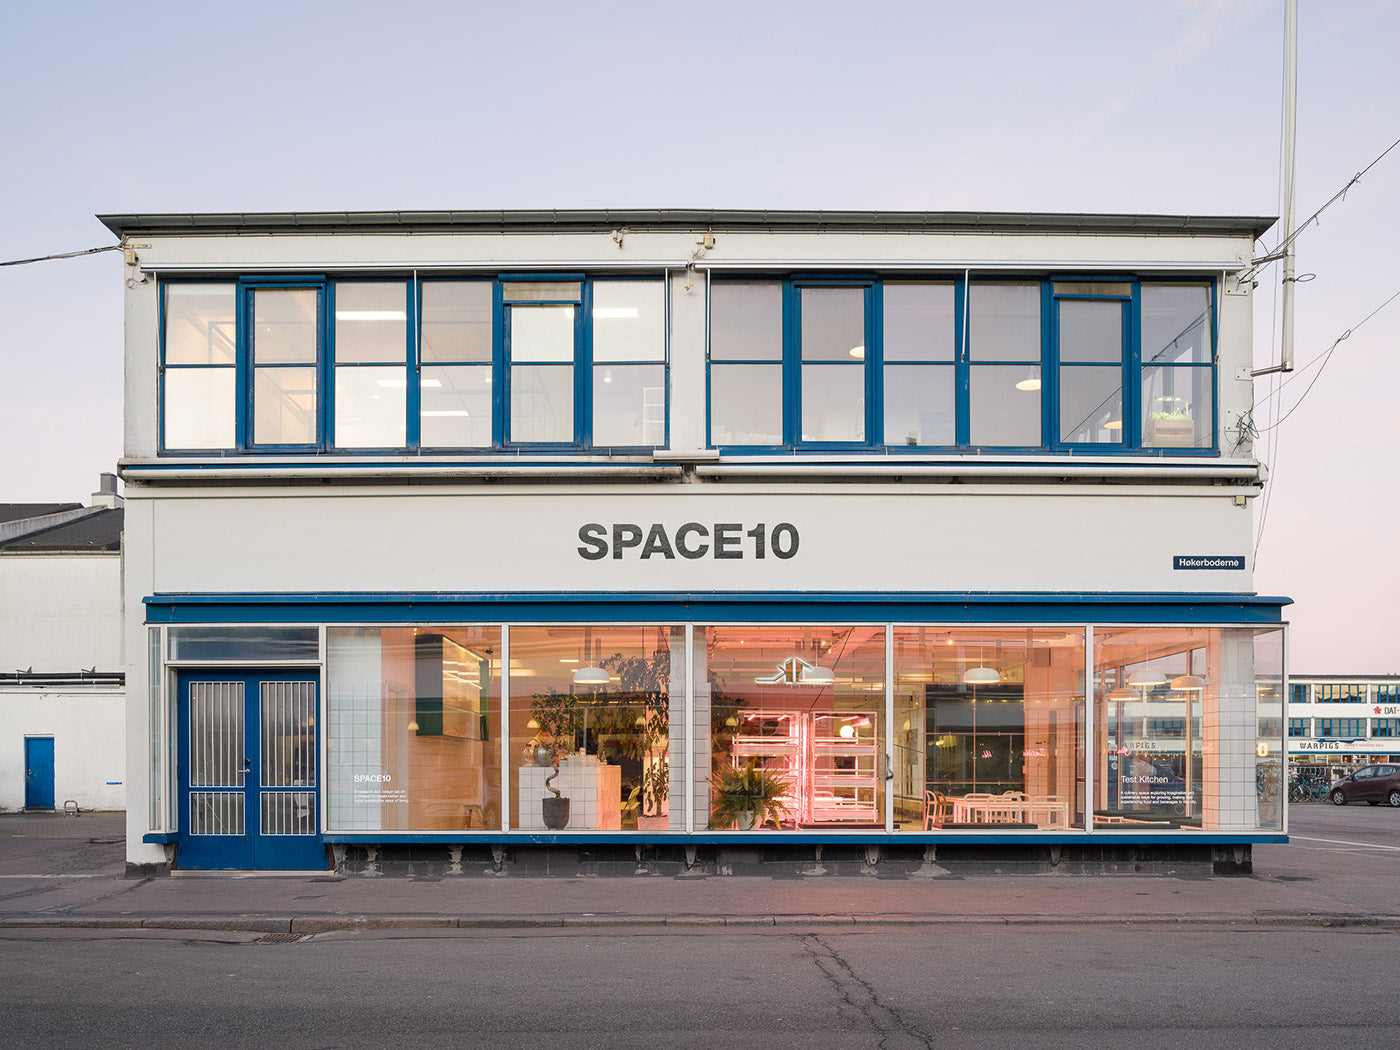 The facade of Space10